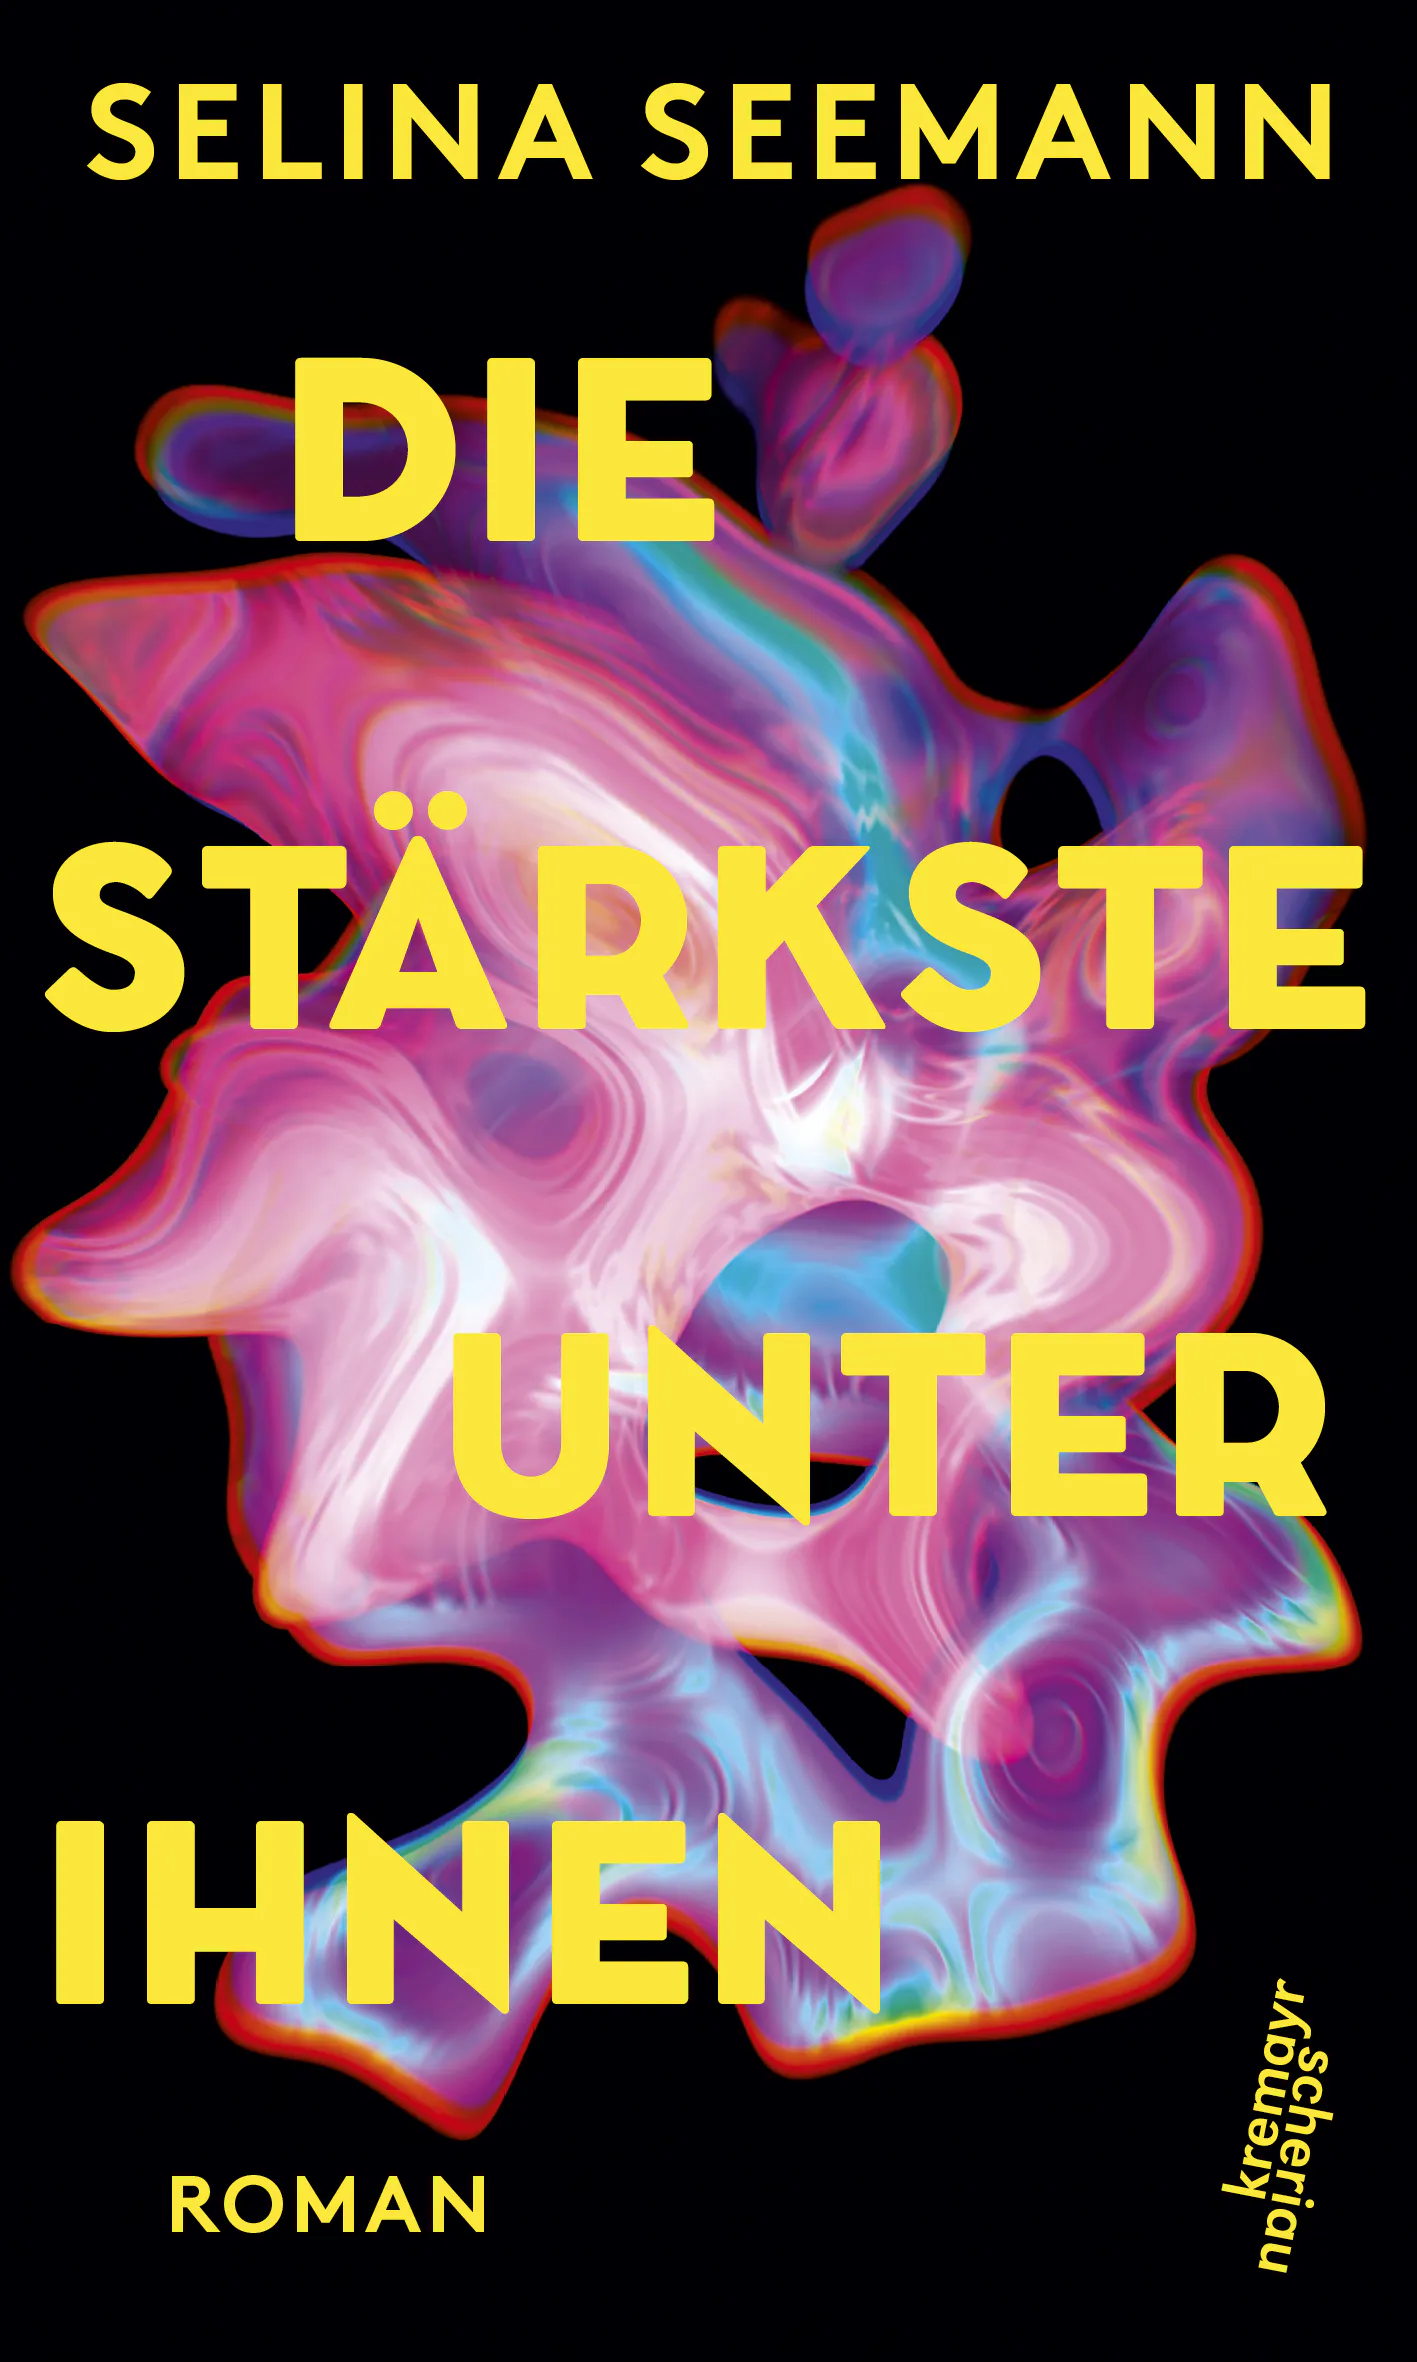 Cover "Die Stärkste unter ihnen" von Selina Seemann. Schwarzer Hintergrund, buntes, abstraktes Gebilde davor, darüber gelbe Schrift.